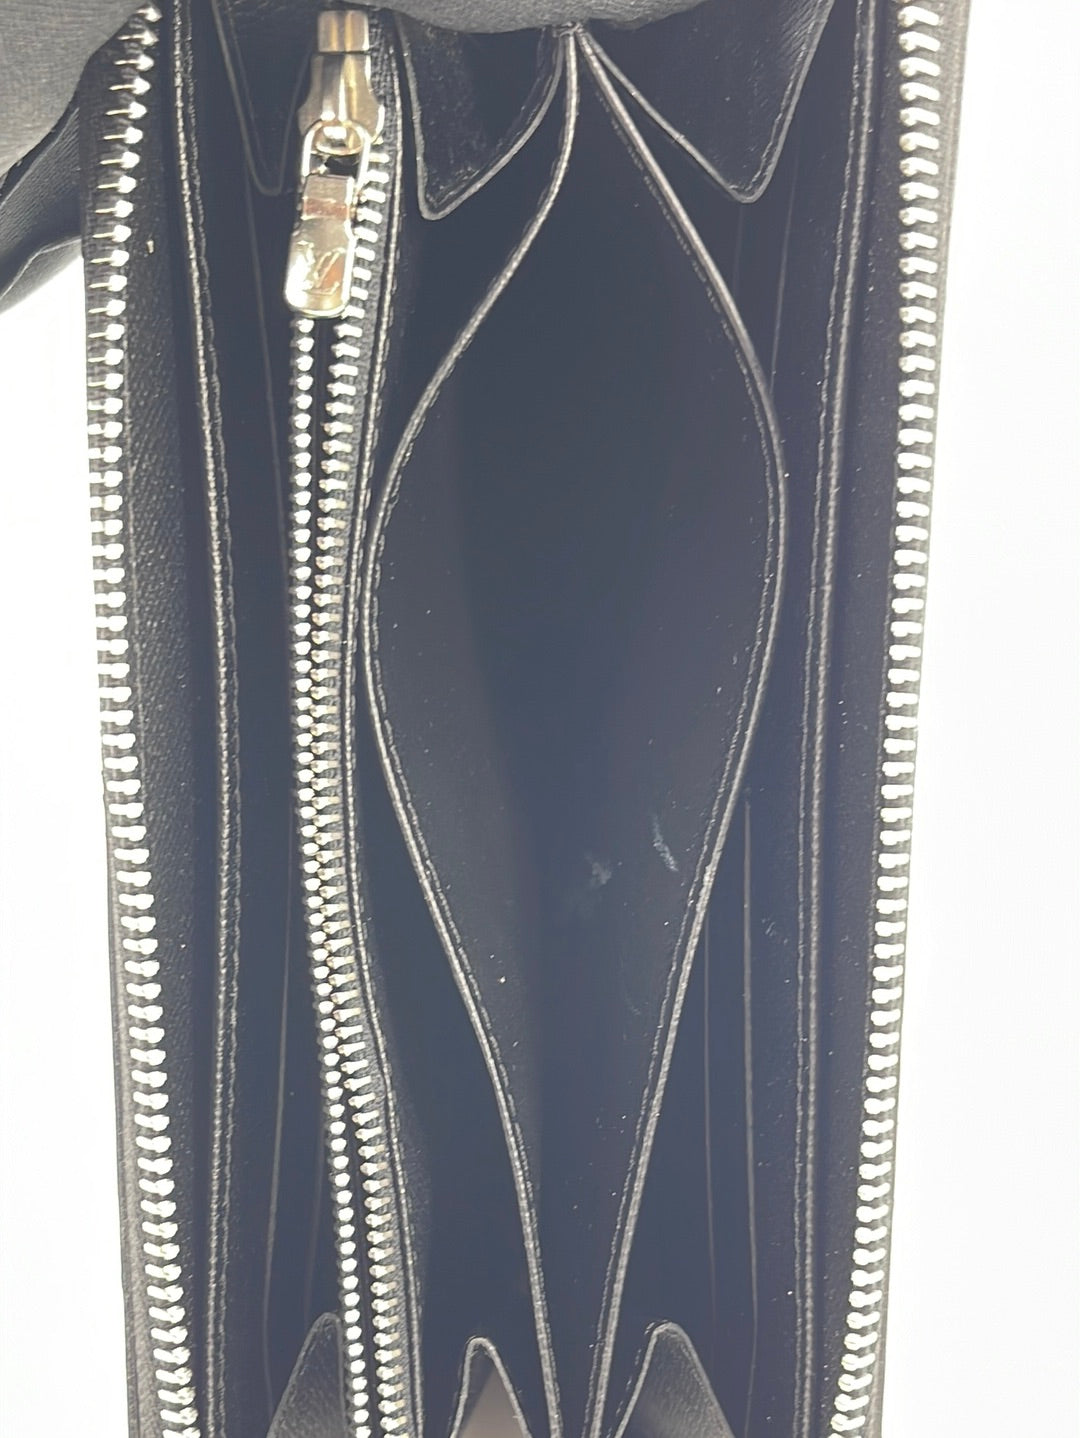 Louis Vuitton Zippy Wallet Vertical Black Blue Long Round Zipper